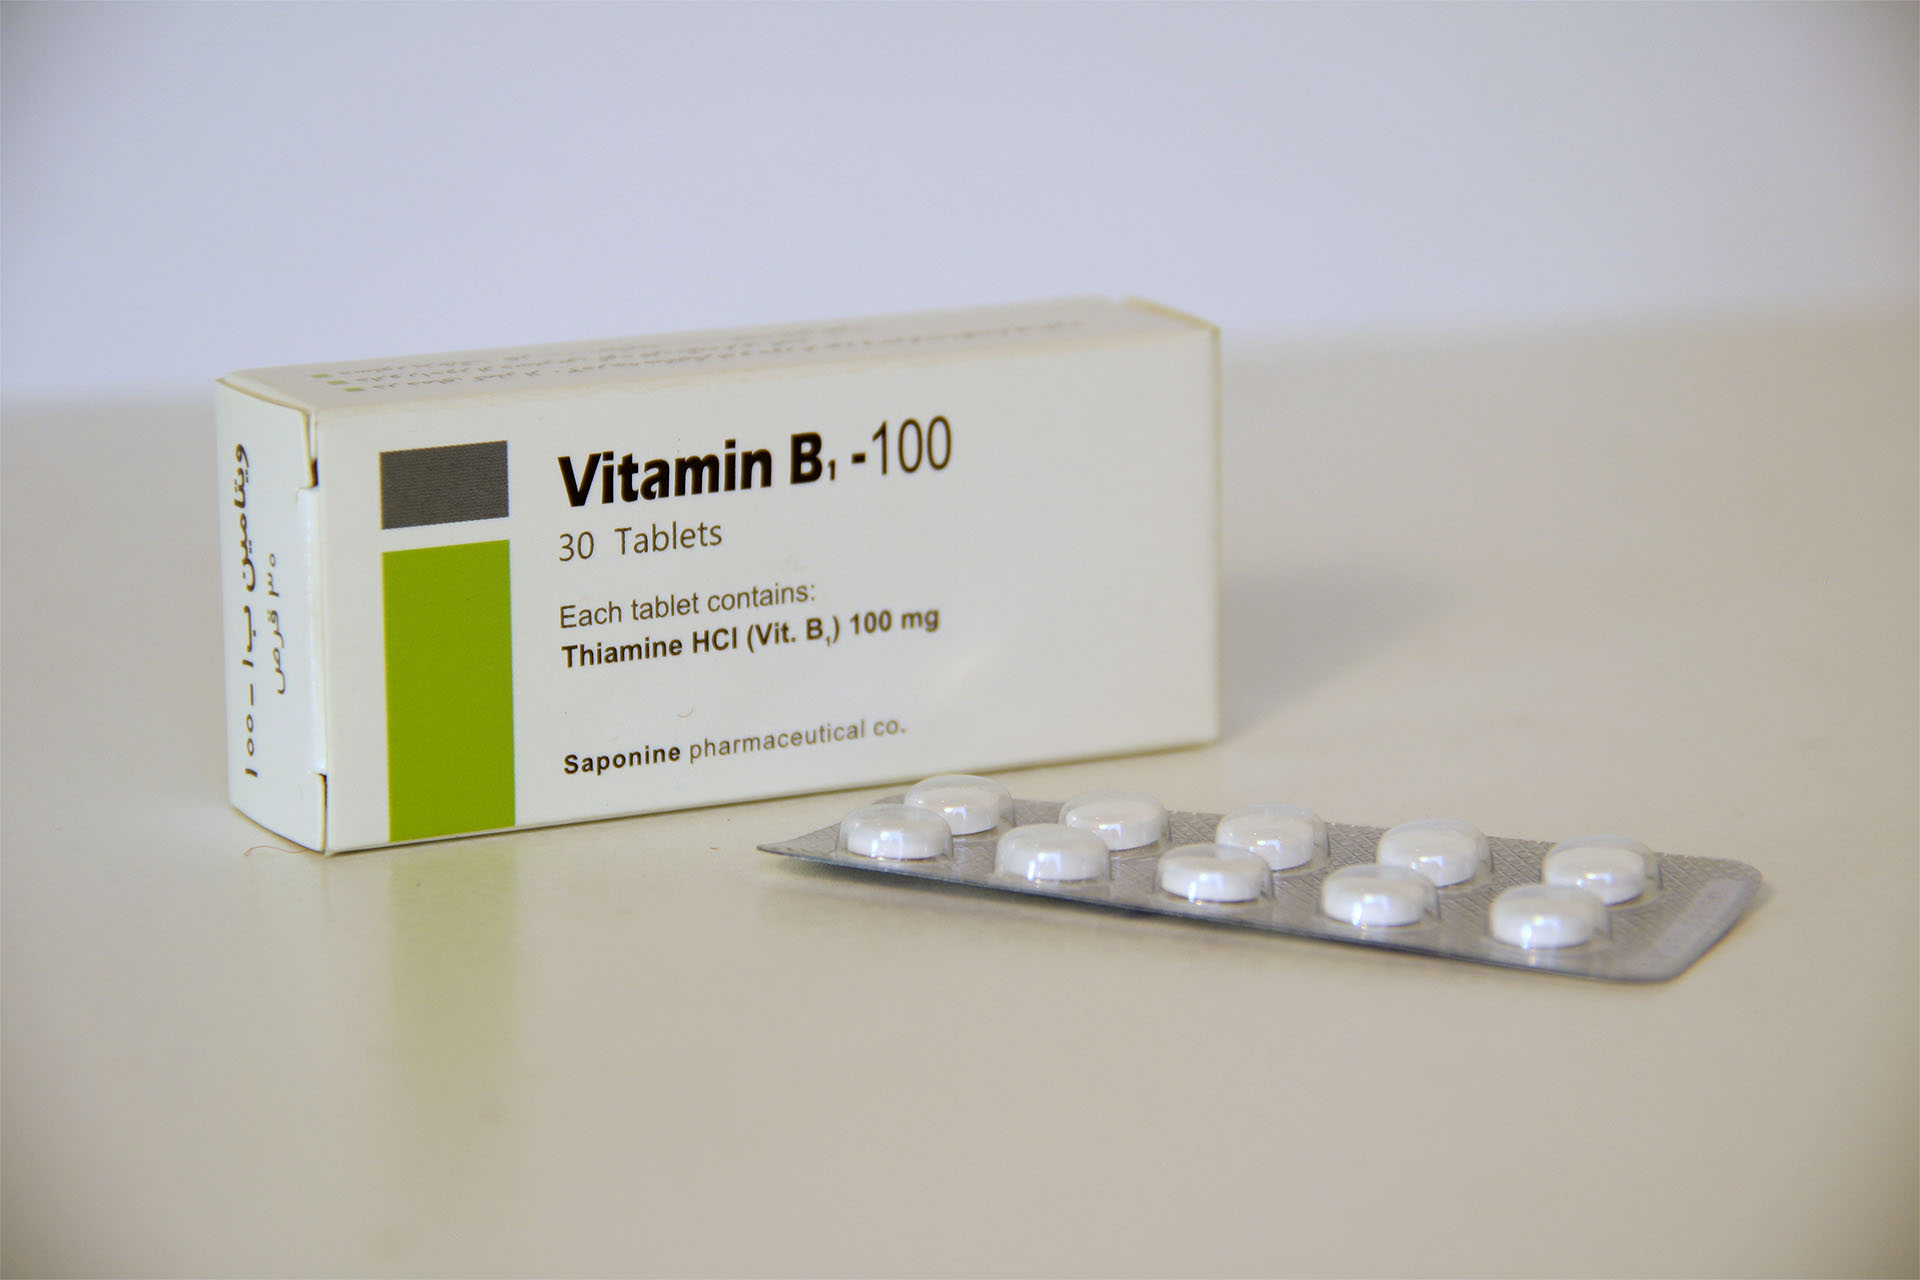 Vitamin B 1 100 mg tablets